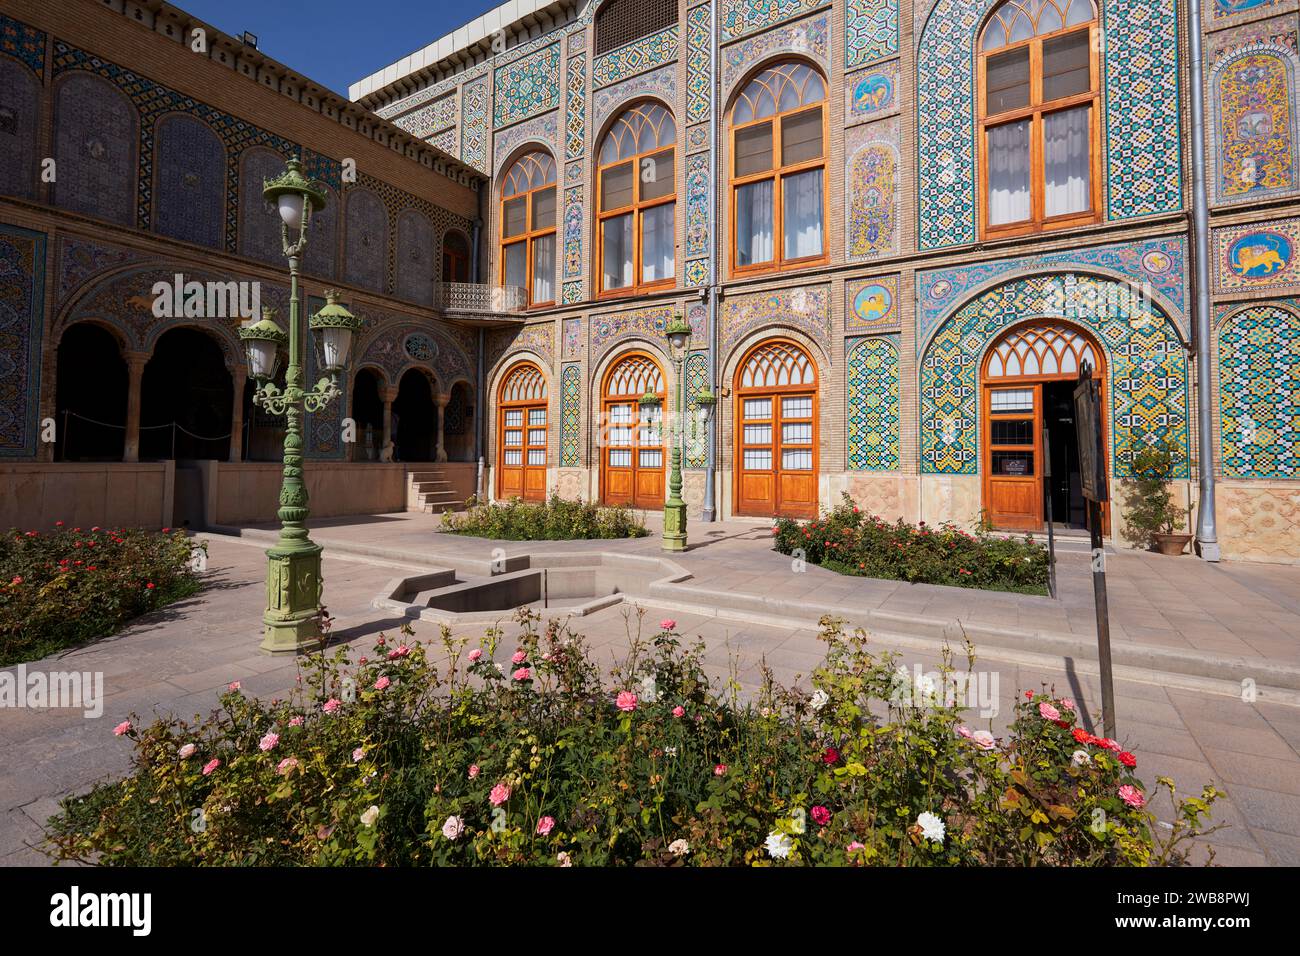 Vue extérieure sur le Palais Golestan, ancienne résidence royale de la dynastie Qajar et site classé au patrimoine mondial de l'UNESCO. Téhéran, Iran. Banque D'Images